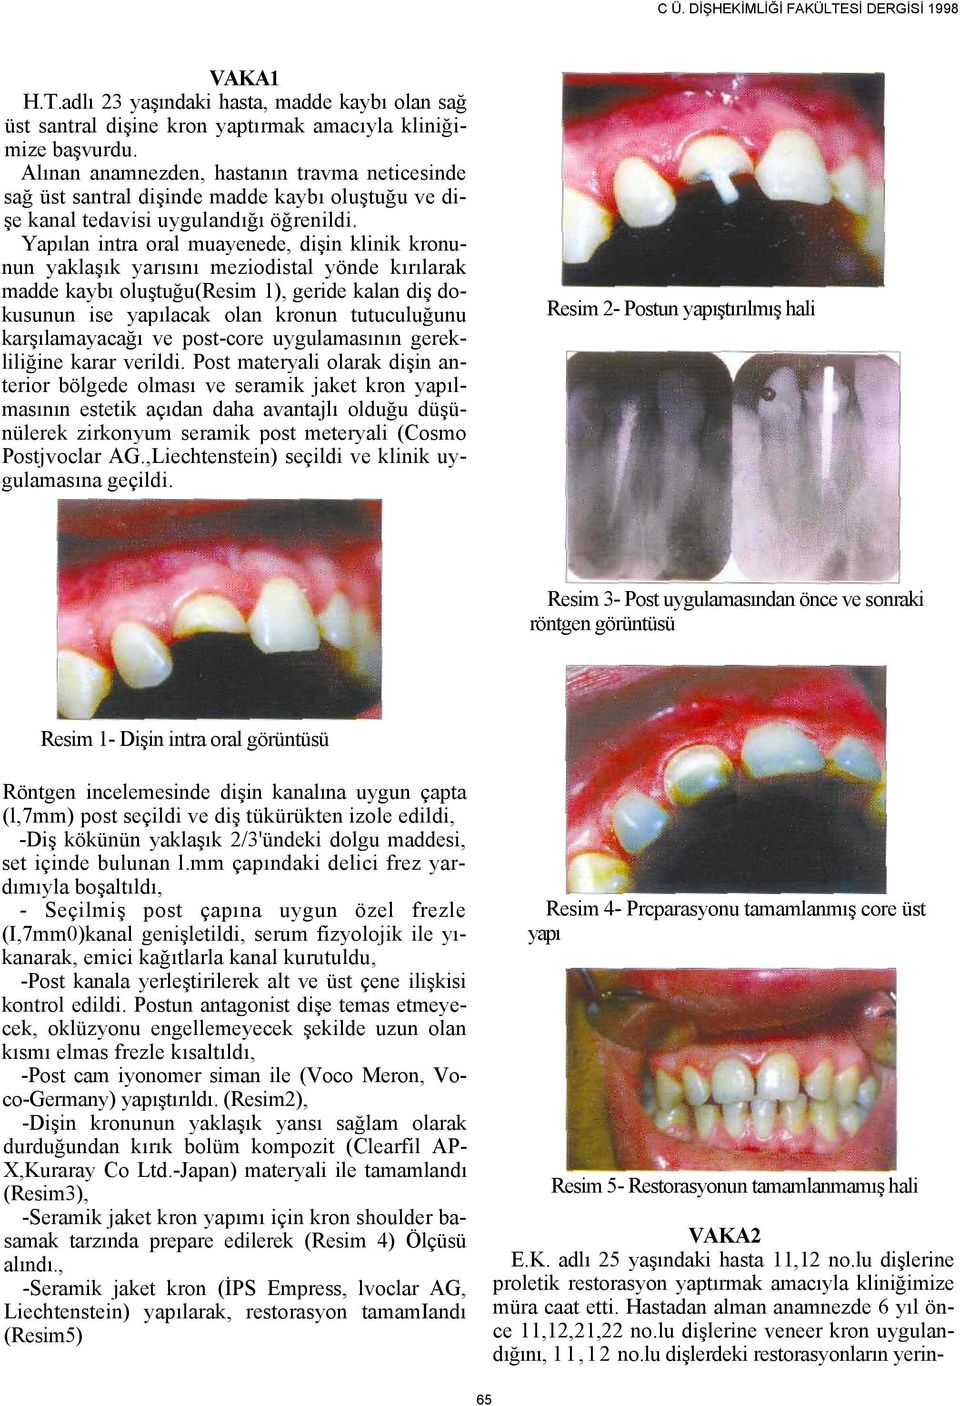 Yapılan intra oral muayenede, dişin klinik kronunun yaklaşık yarısını meziodistal yönde kırılarak madde kaybı oluştuğu(resim 1), geride kalan diş dokusunun ise yapılacak olan kronun tutuculuğunu